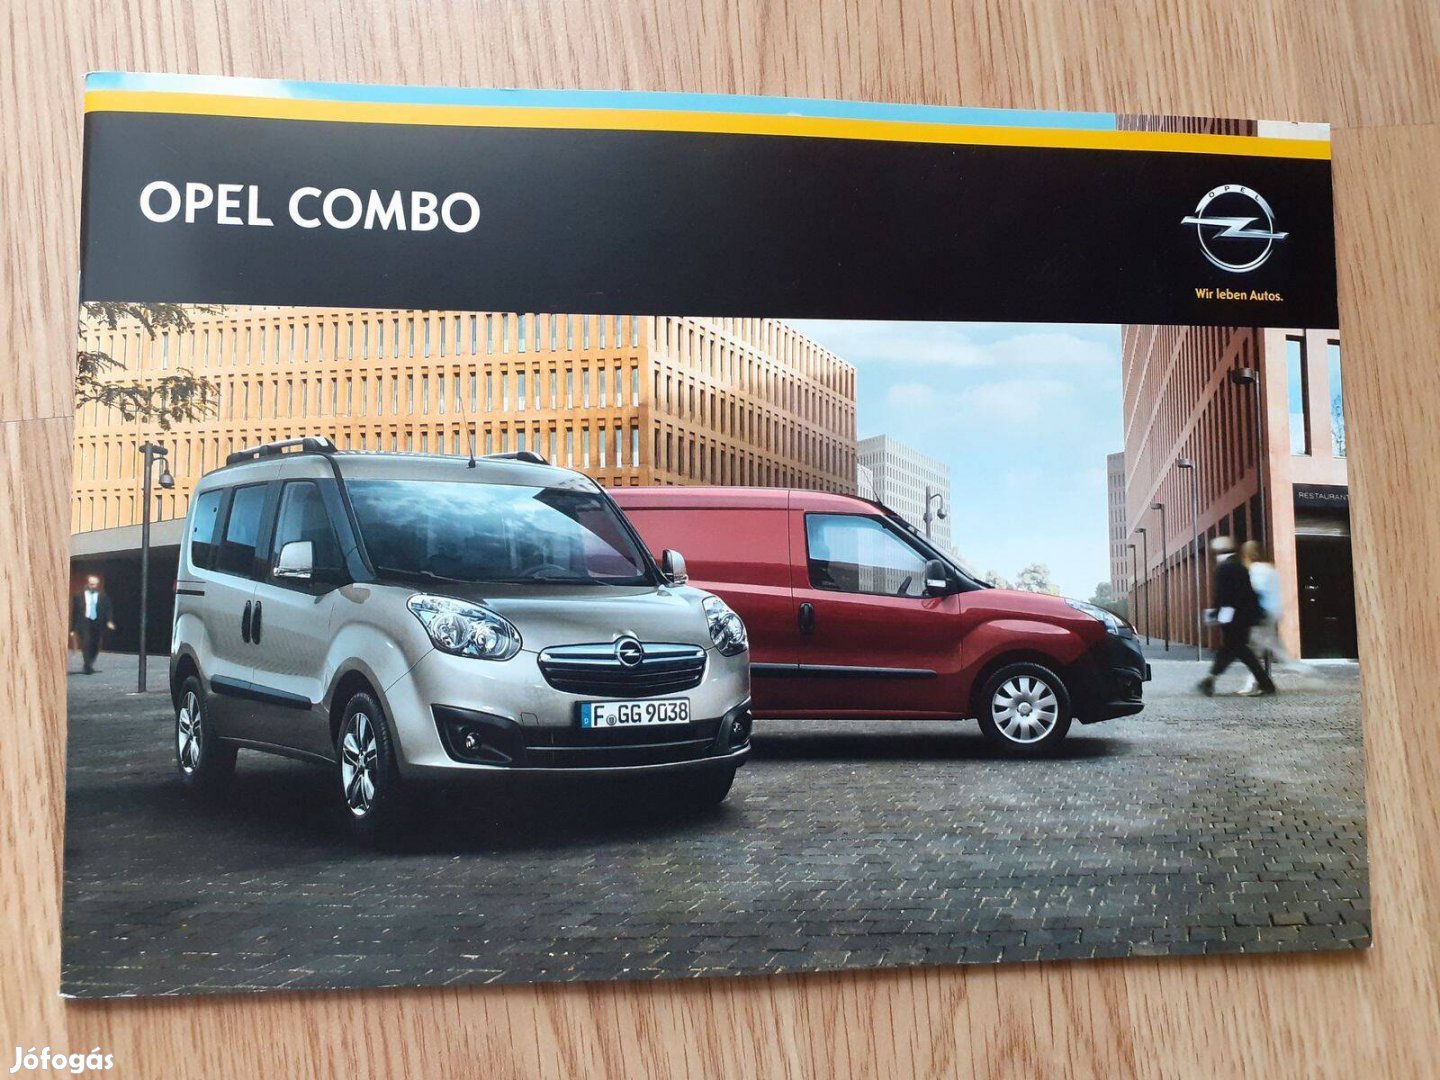 Opel Combo (D) prospektus - 2014, magyar nyelvű